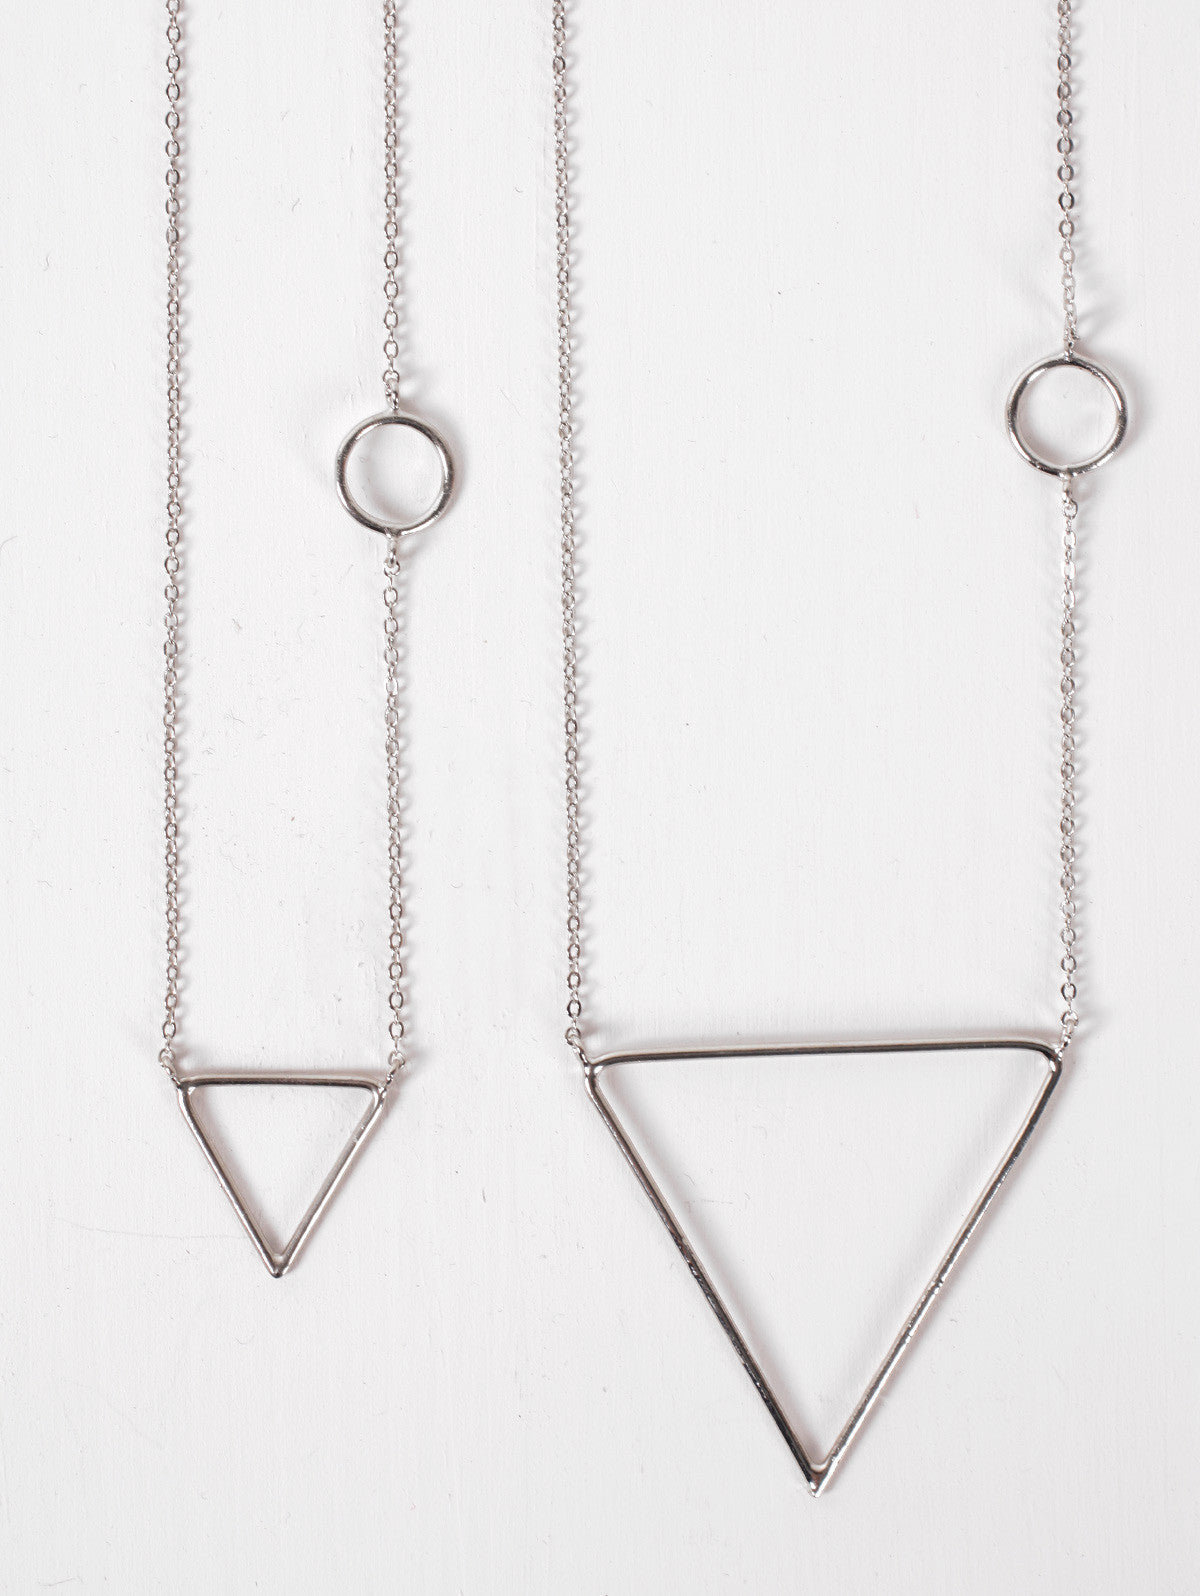 Silver Pyramid Necklaces